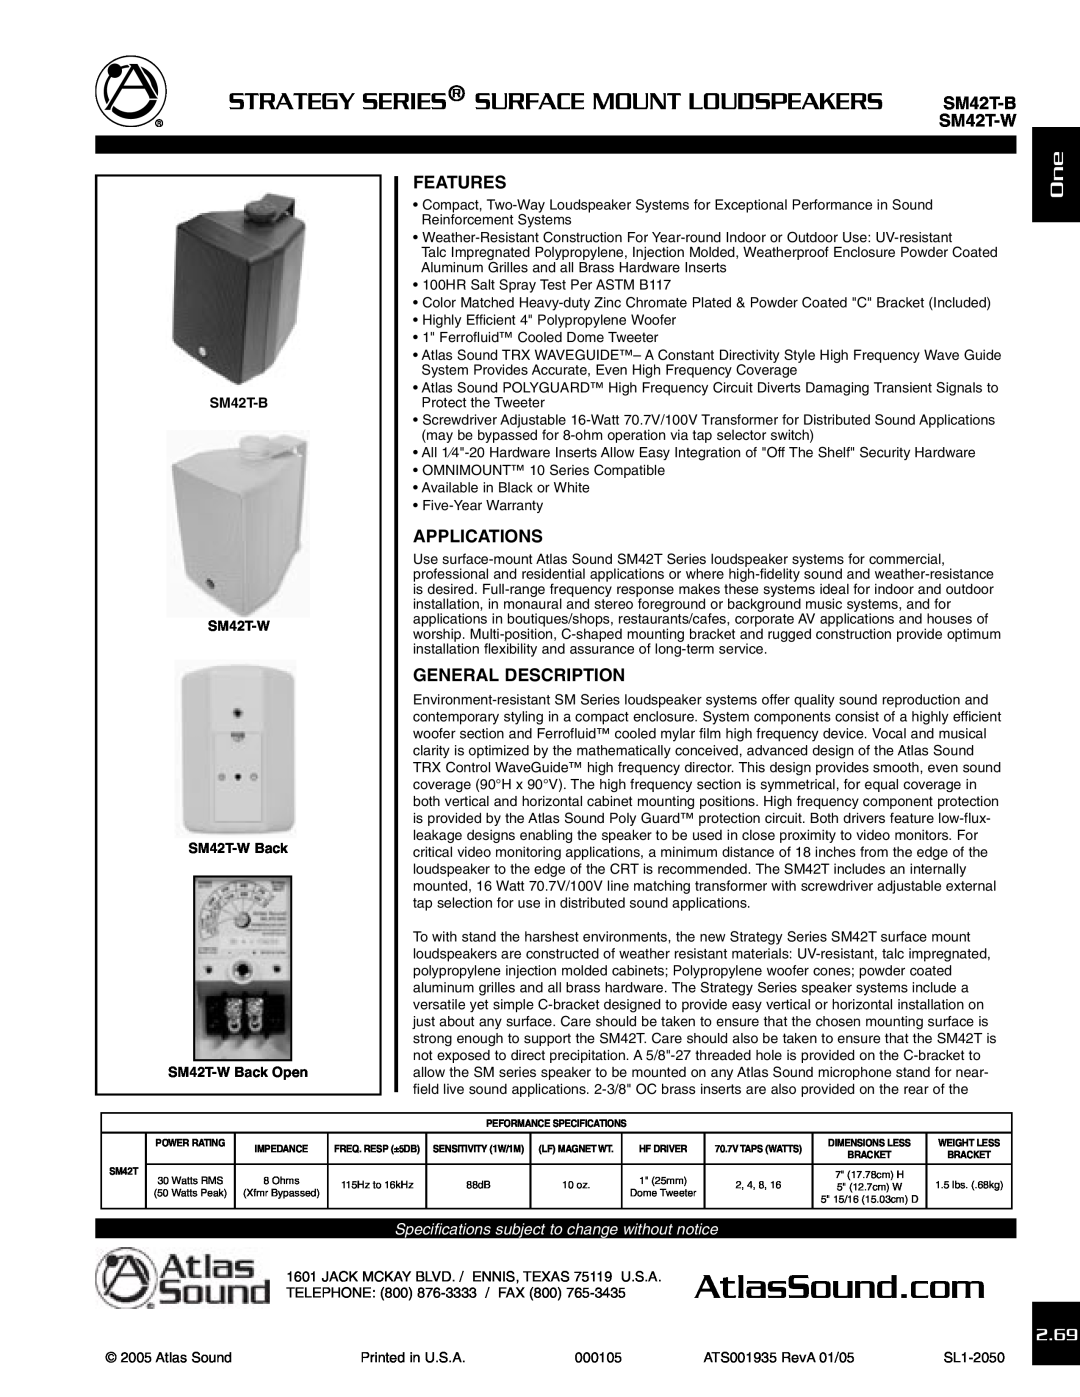 Atlas Sound SM42T-B specifications Features, Applications, General Description, 2.69, SM42T-W 